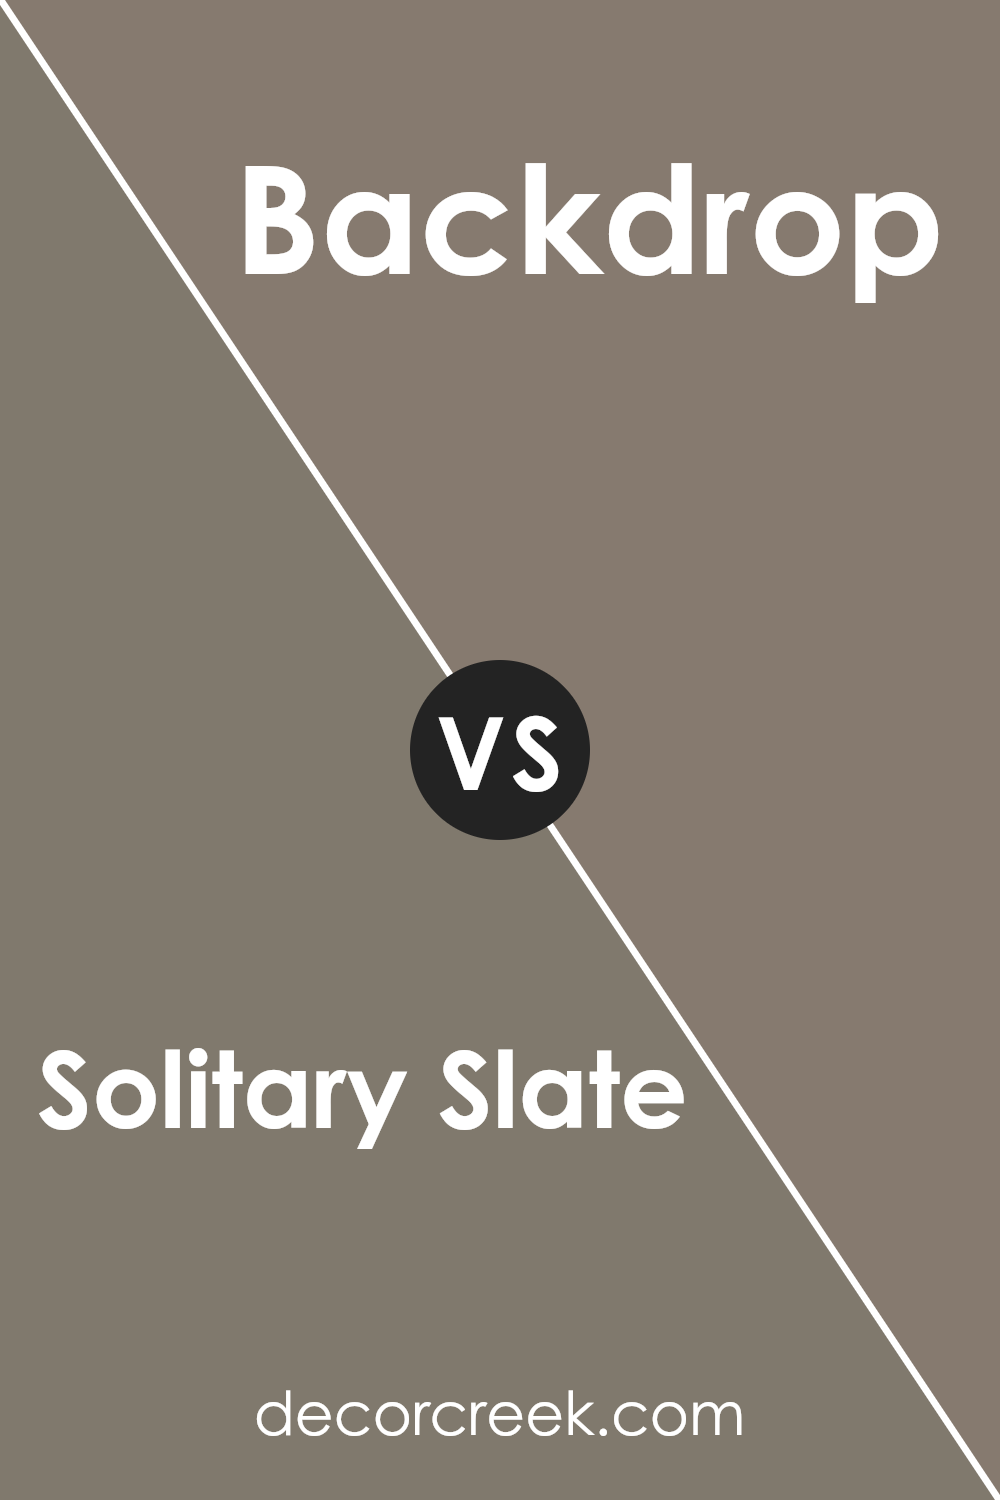 solitary_slate_sw_9598_vs_backdrop_sw_7025